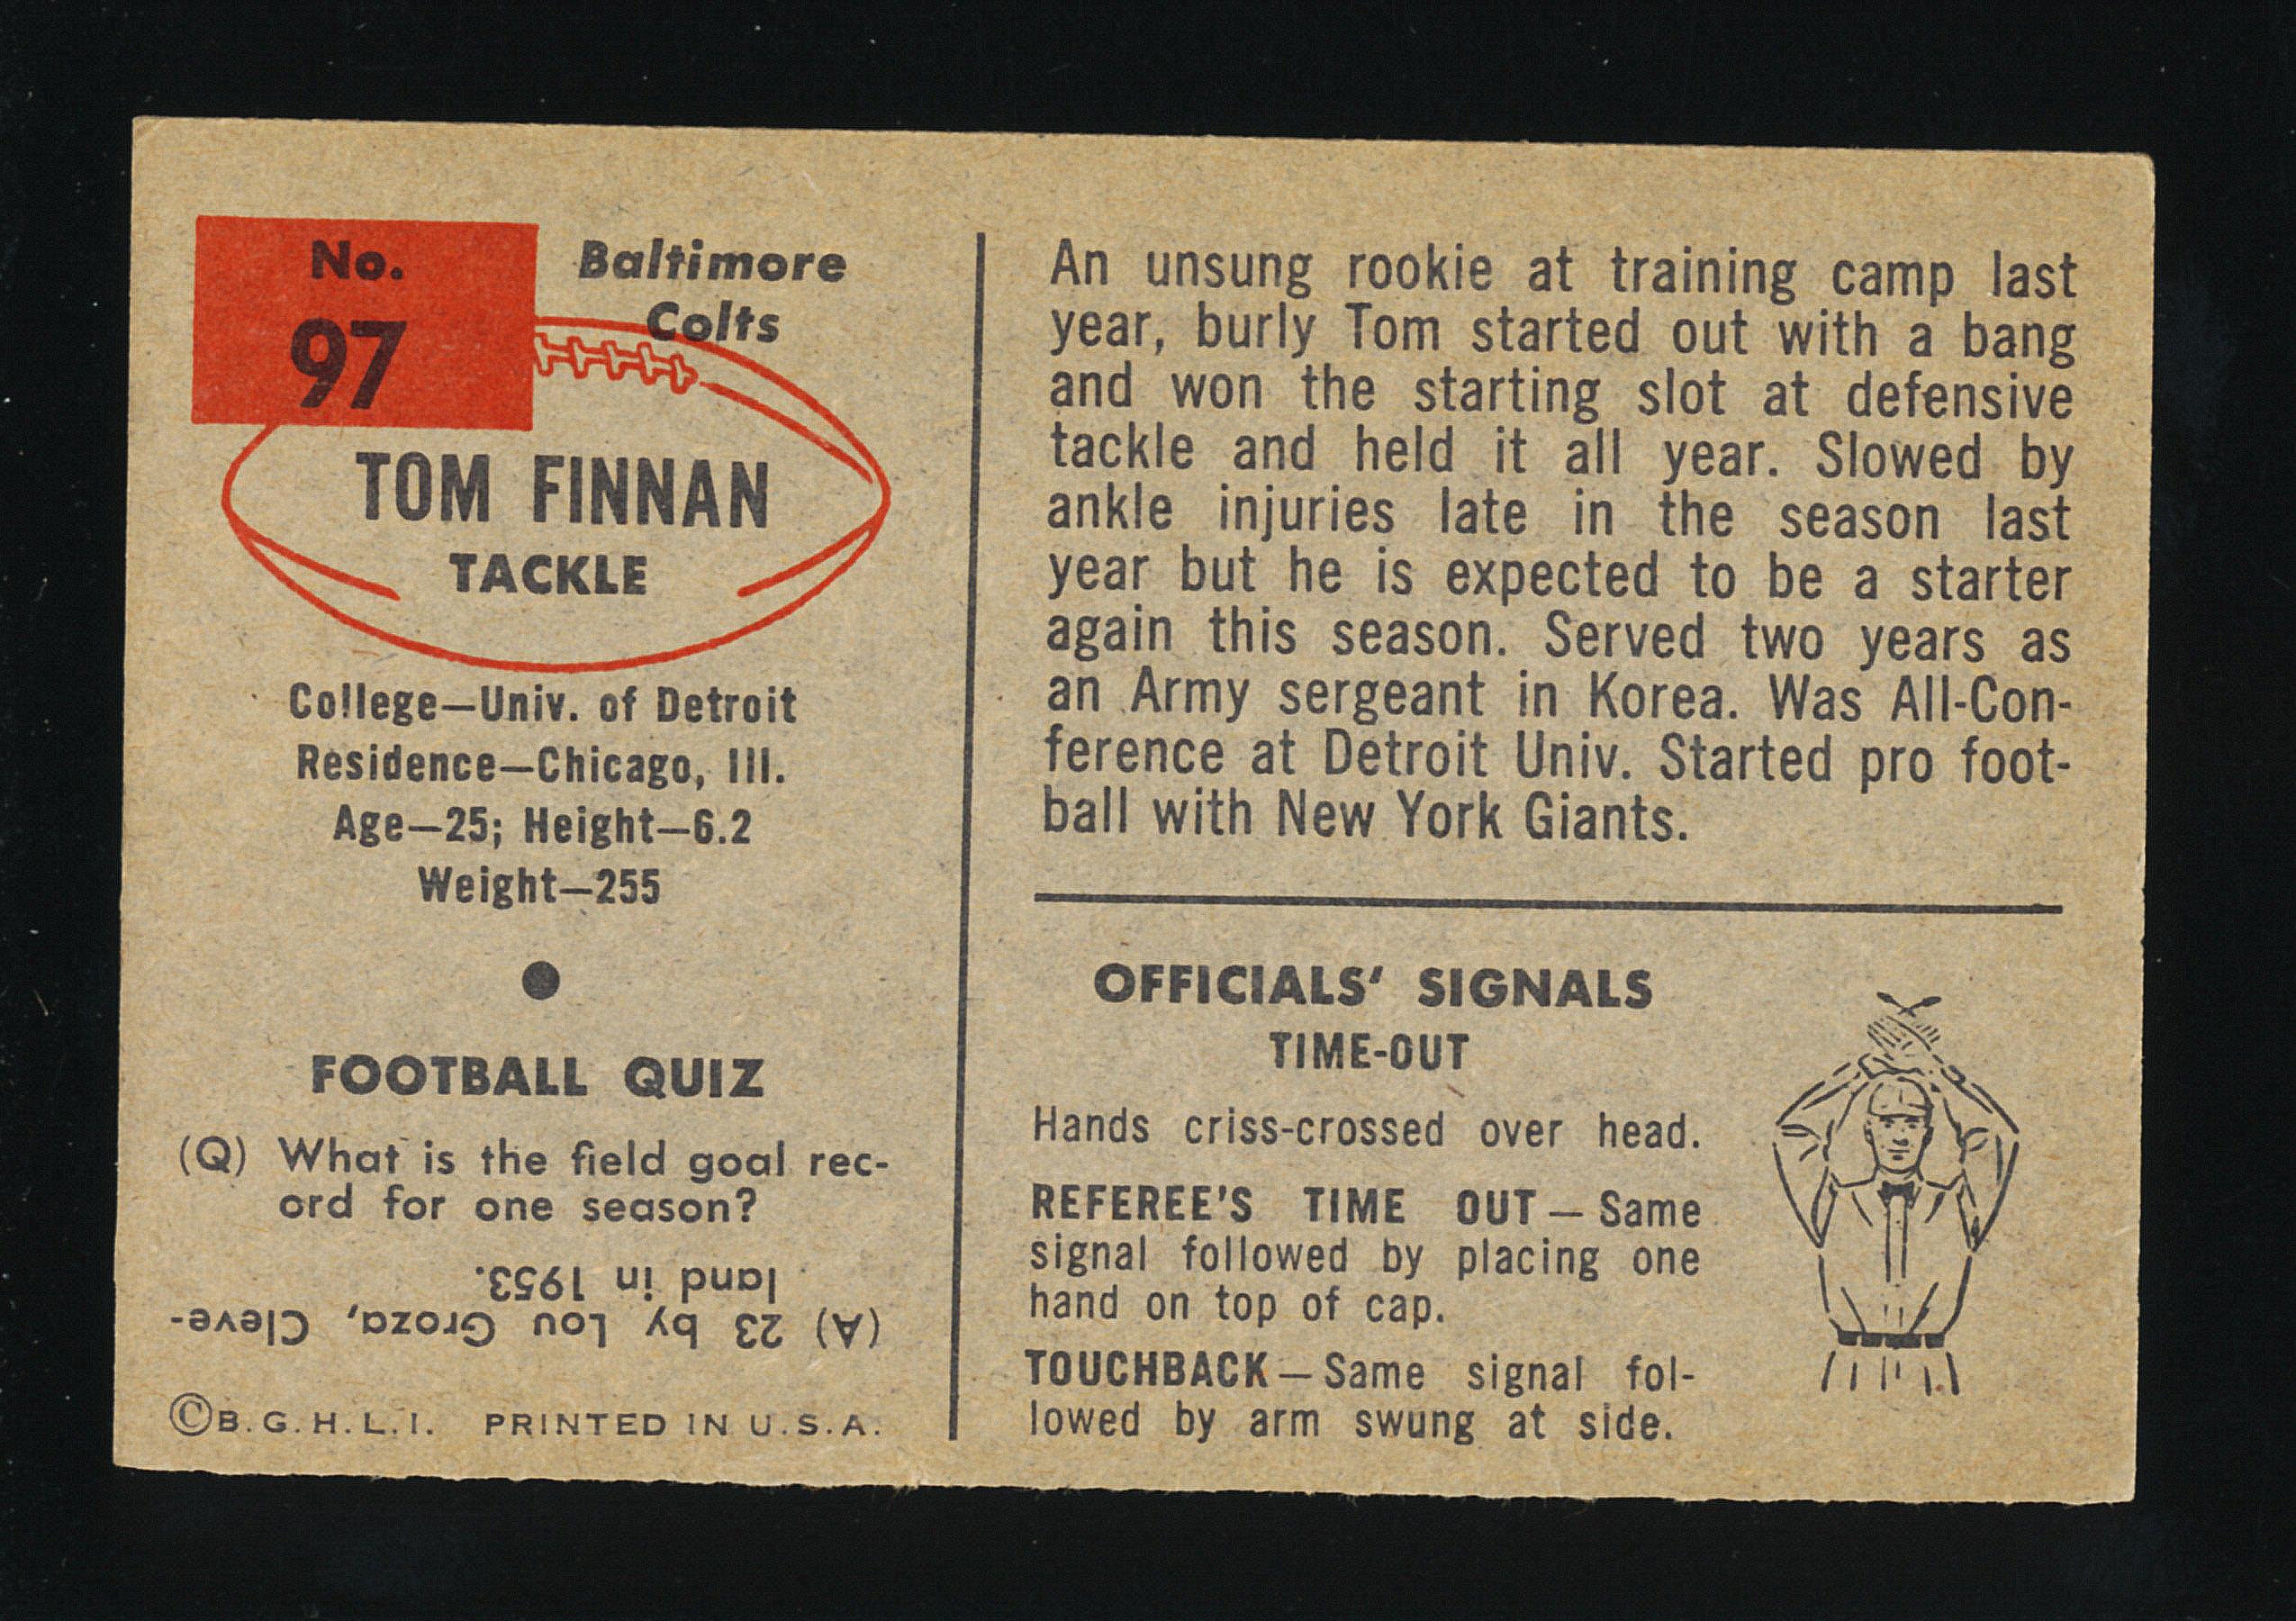 1954 Bowman Football Card #97 Tom Finnan Baltimore Colts